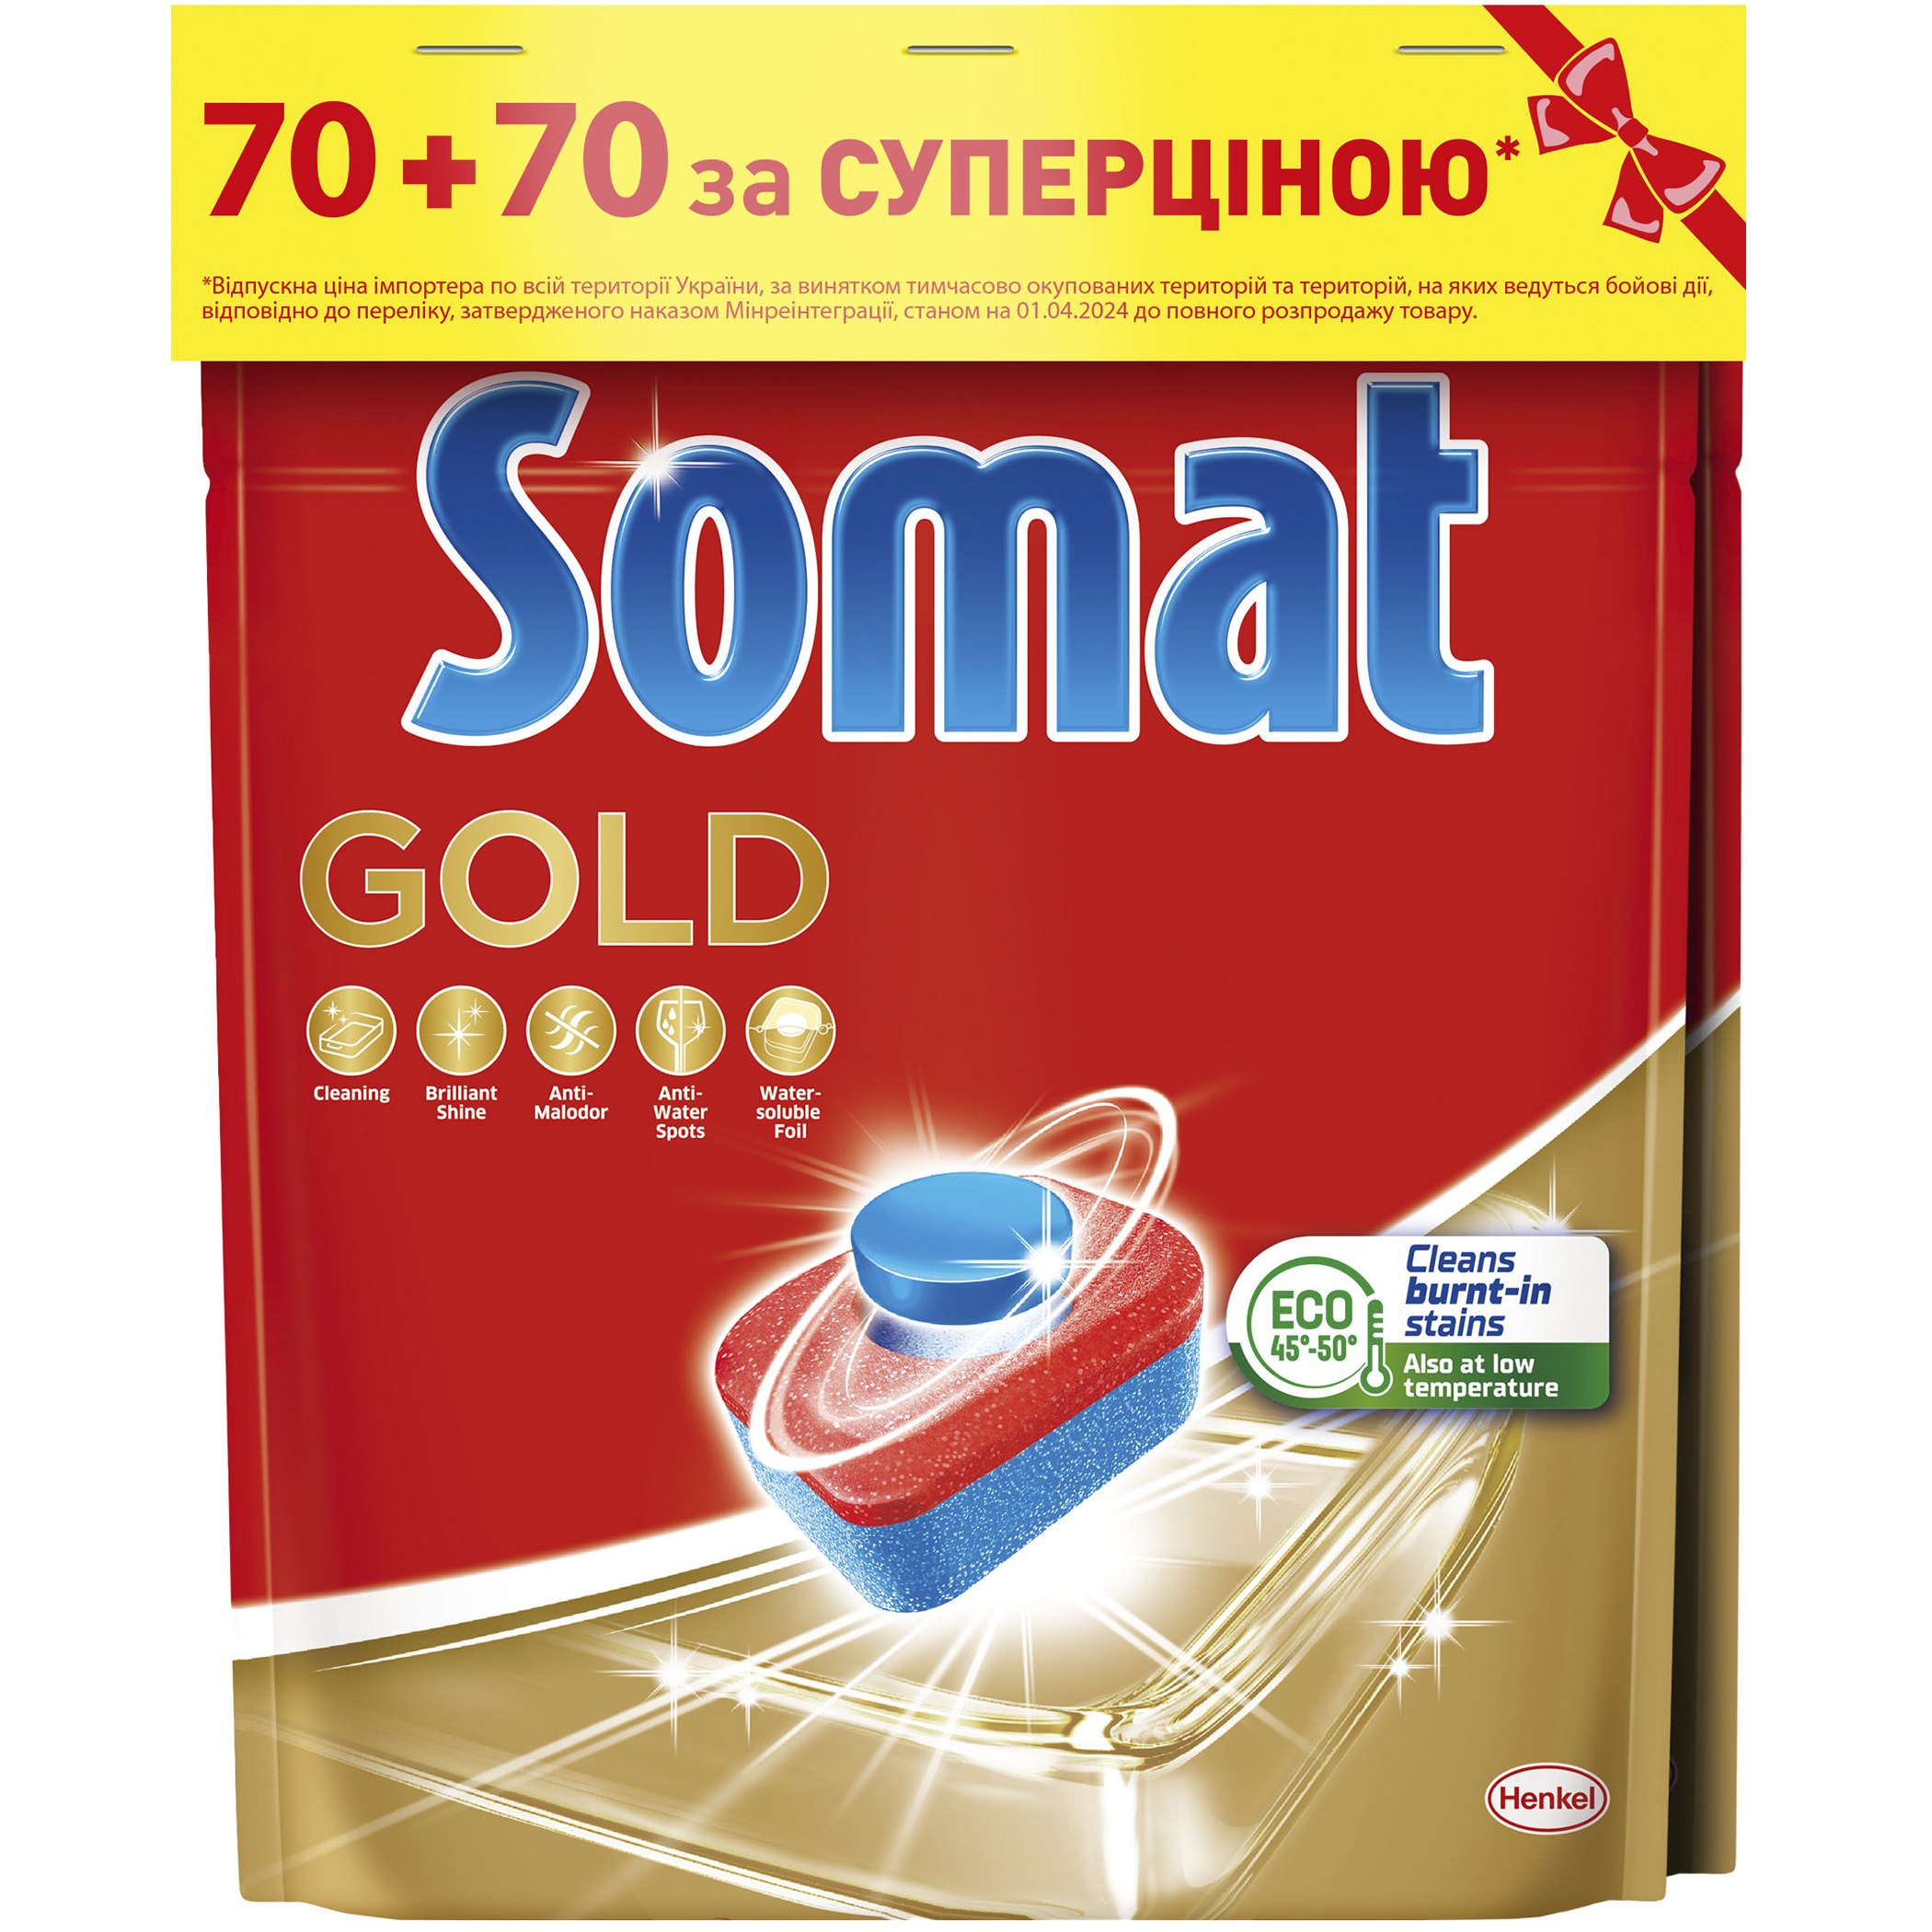 Таблетки для посудомоечной машины Somat Gold Duo 70+70 шт. - фото 1